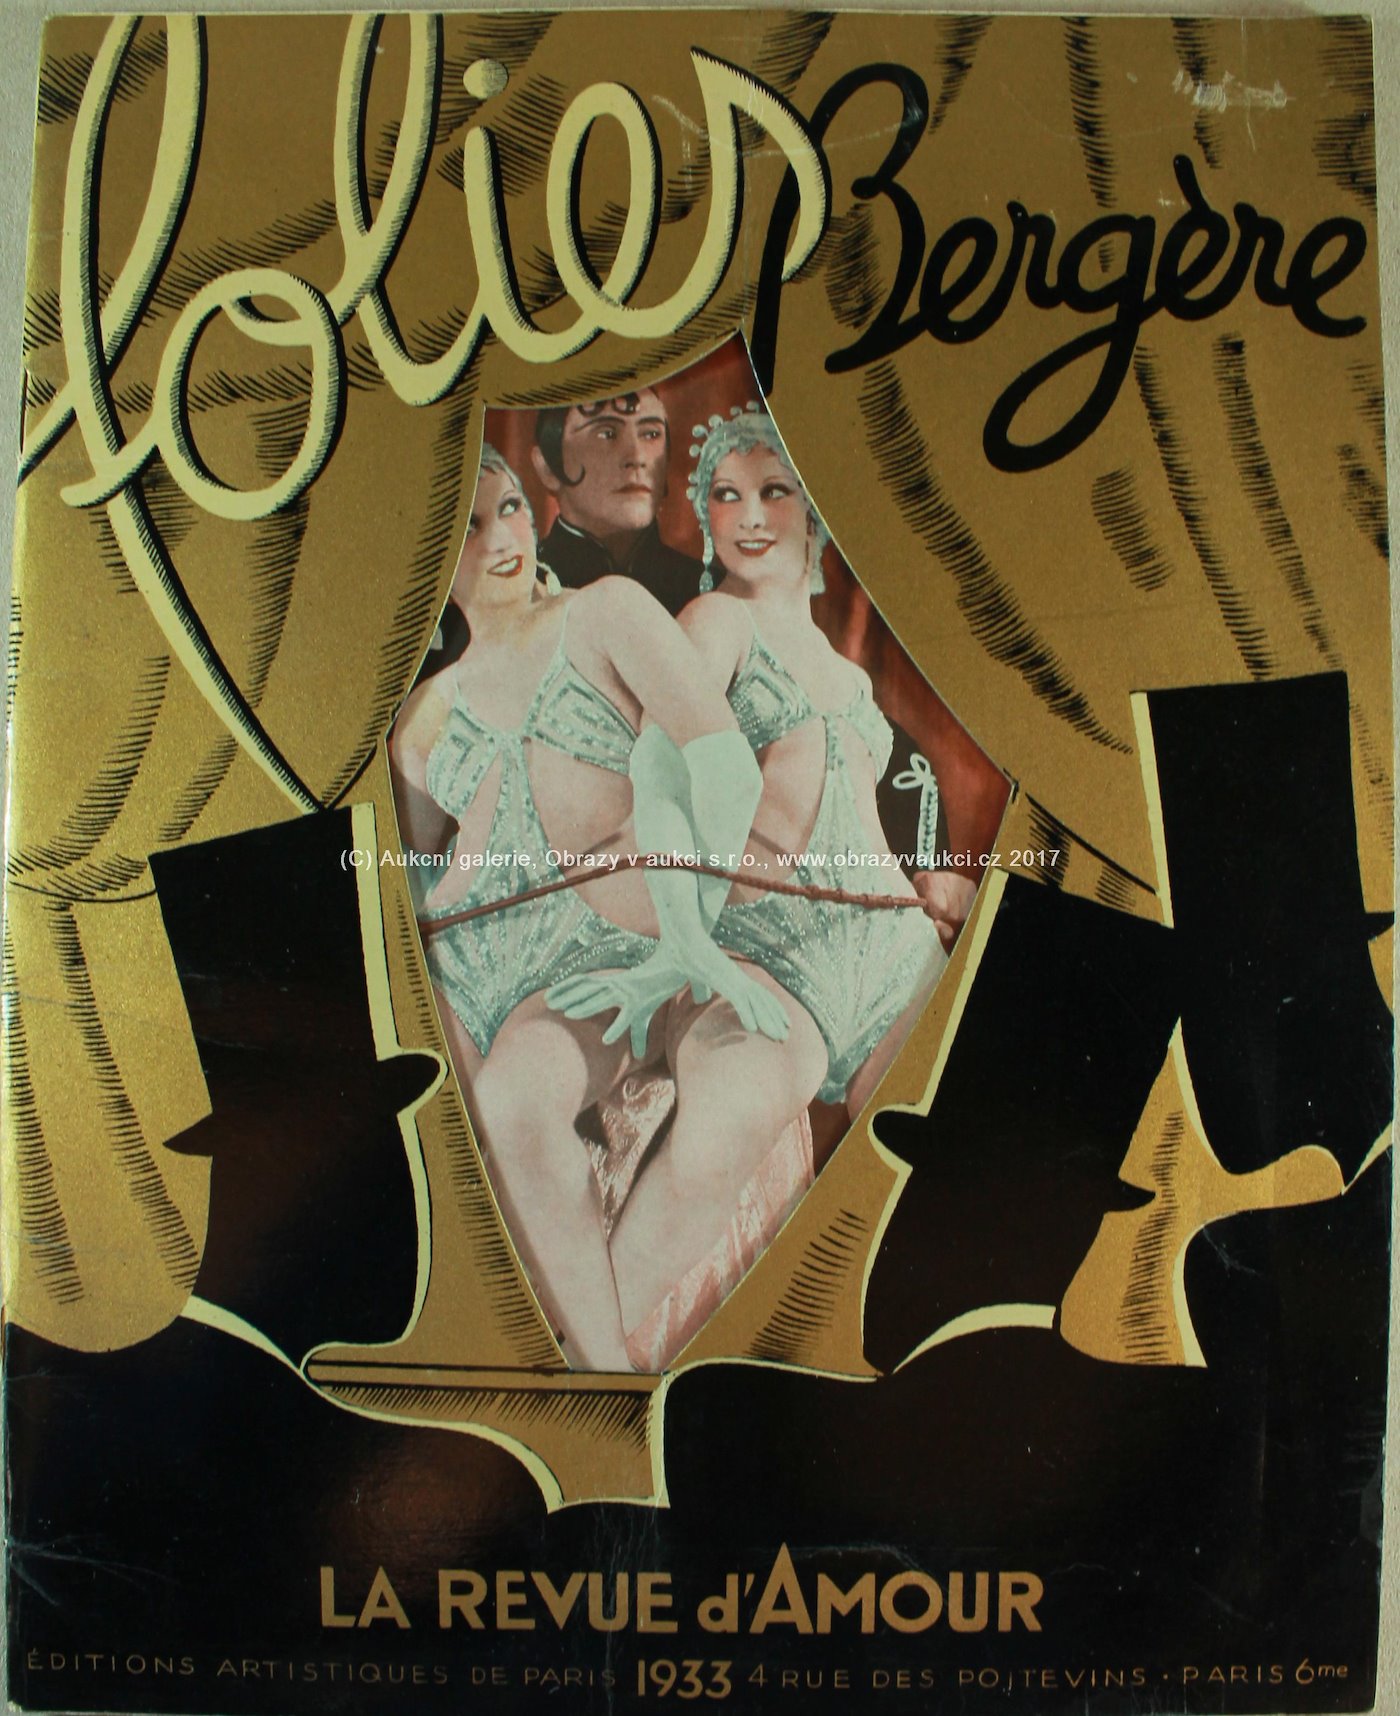 Erotika - Folie Bergere - La Revue d´Amour